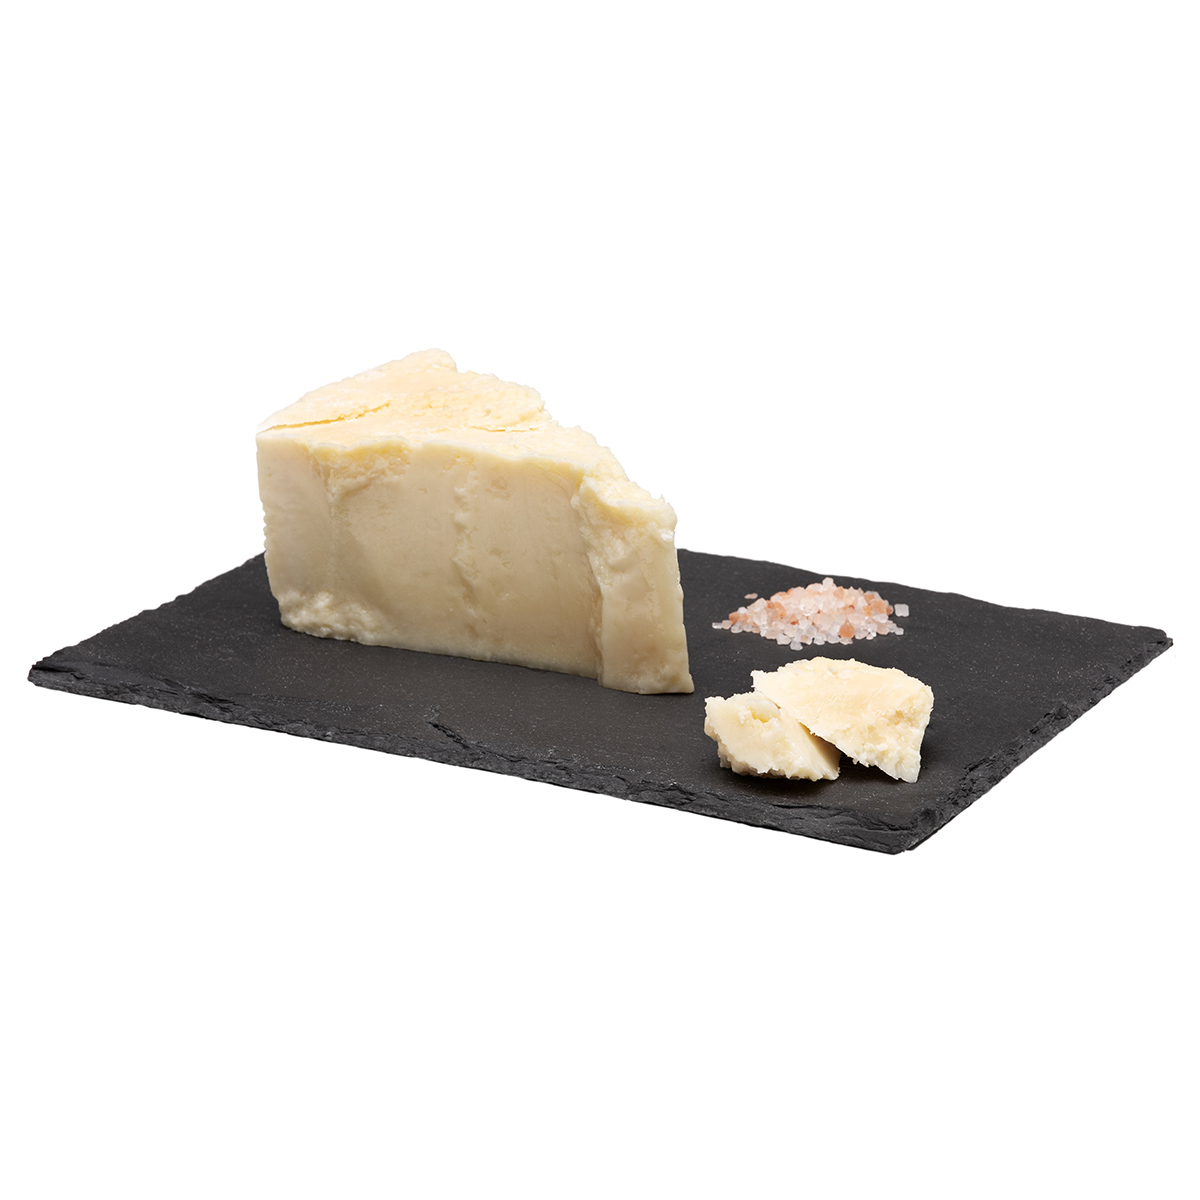 Pecorino romano DOP formaggio italiano di prima qualità vendita online